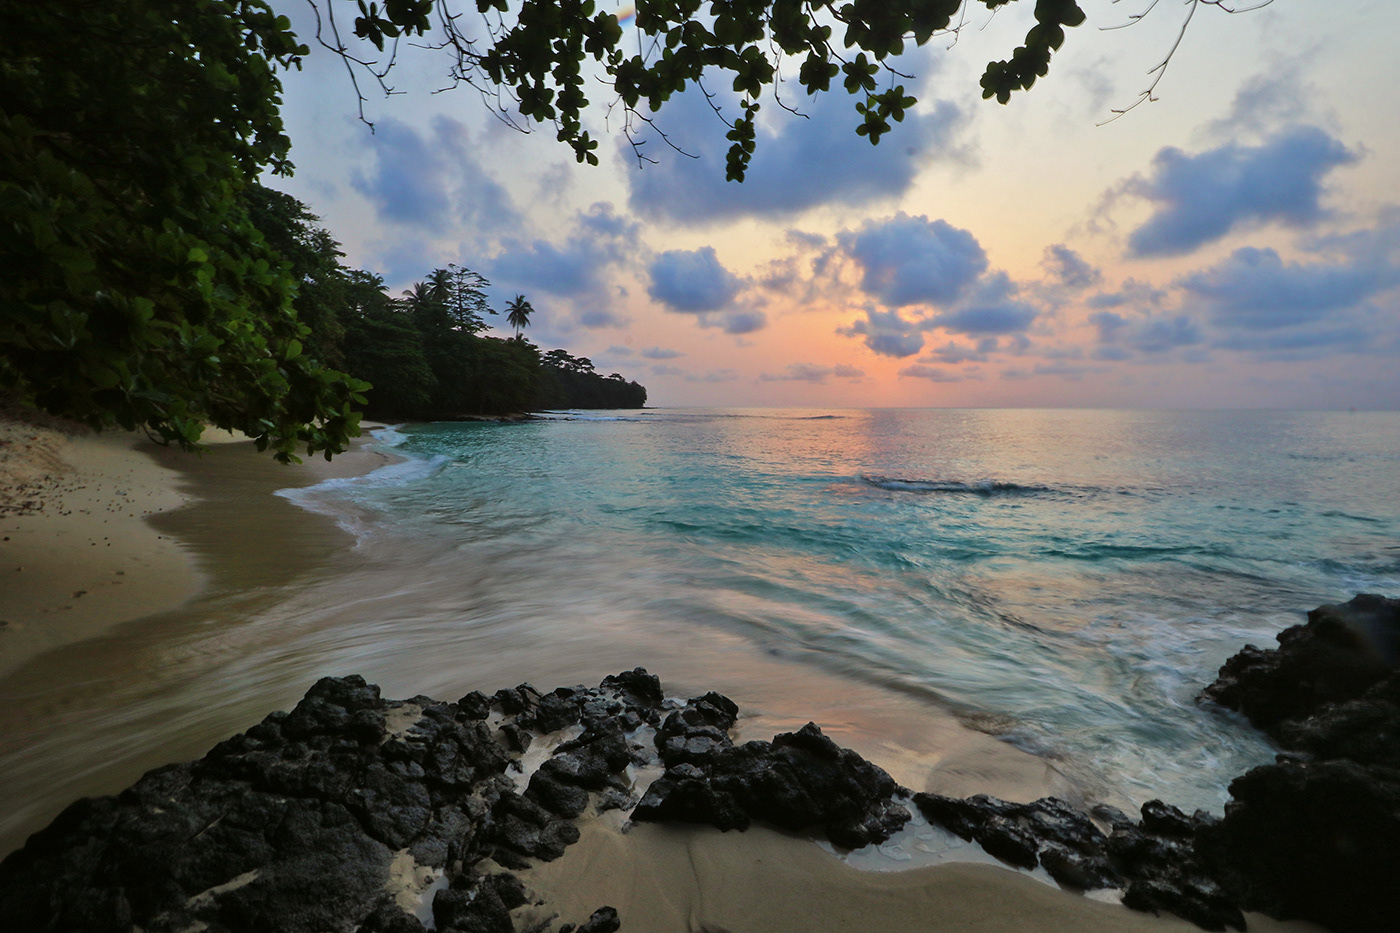 beach beaches equador equator islands São Tomé tropical beaches tropics Palm Trees paradise